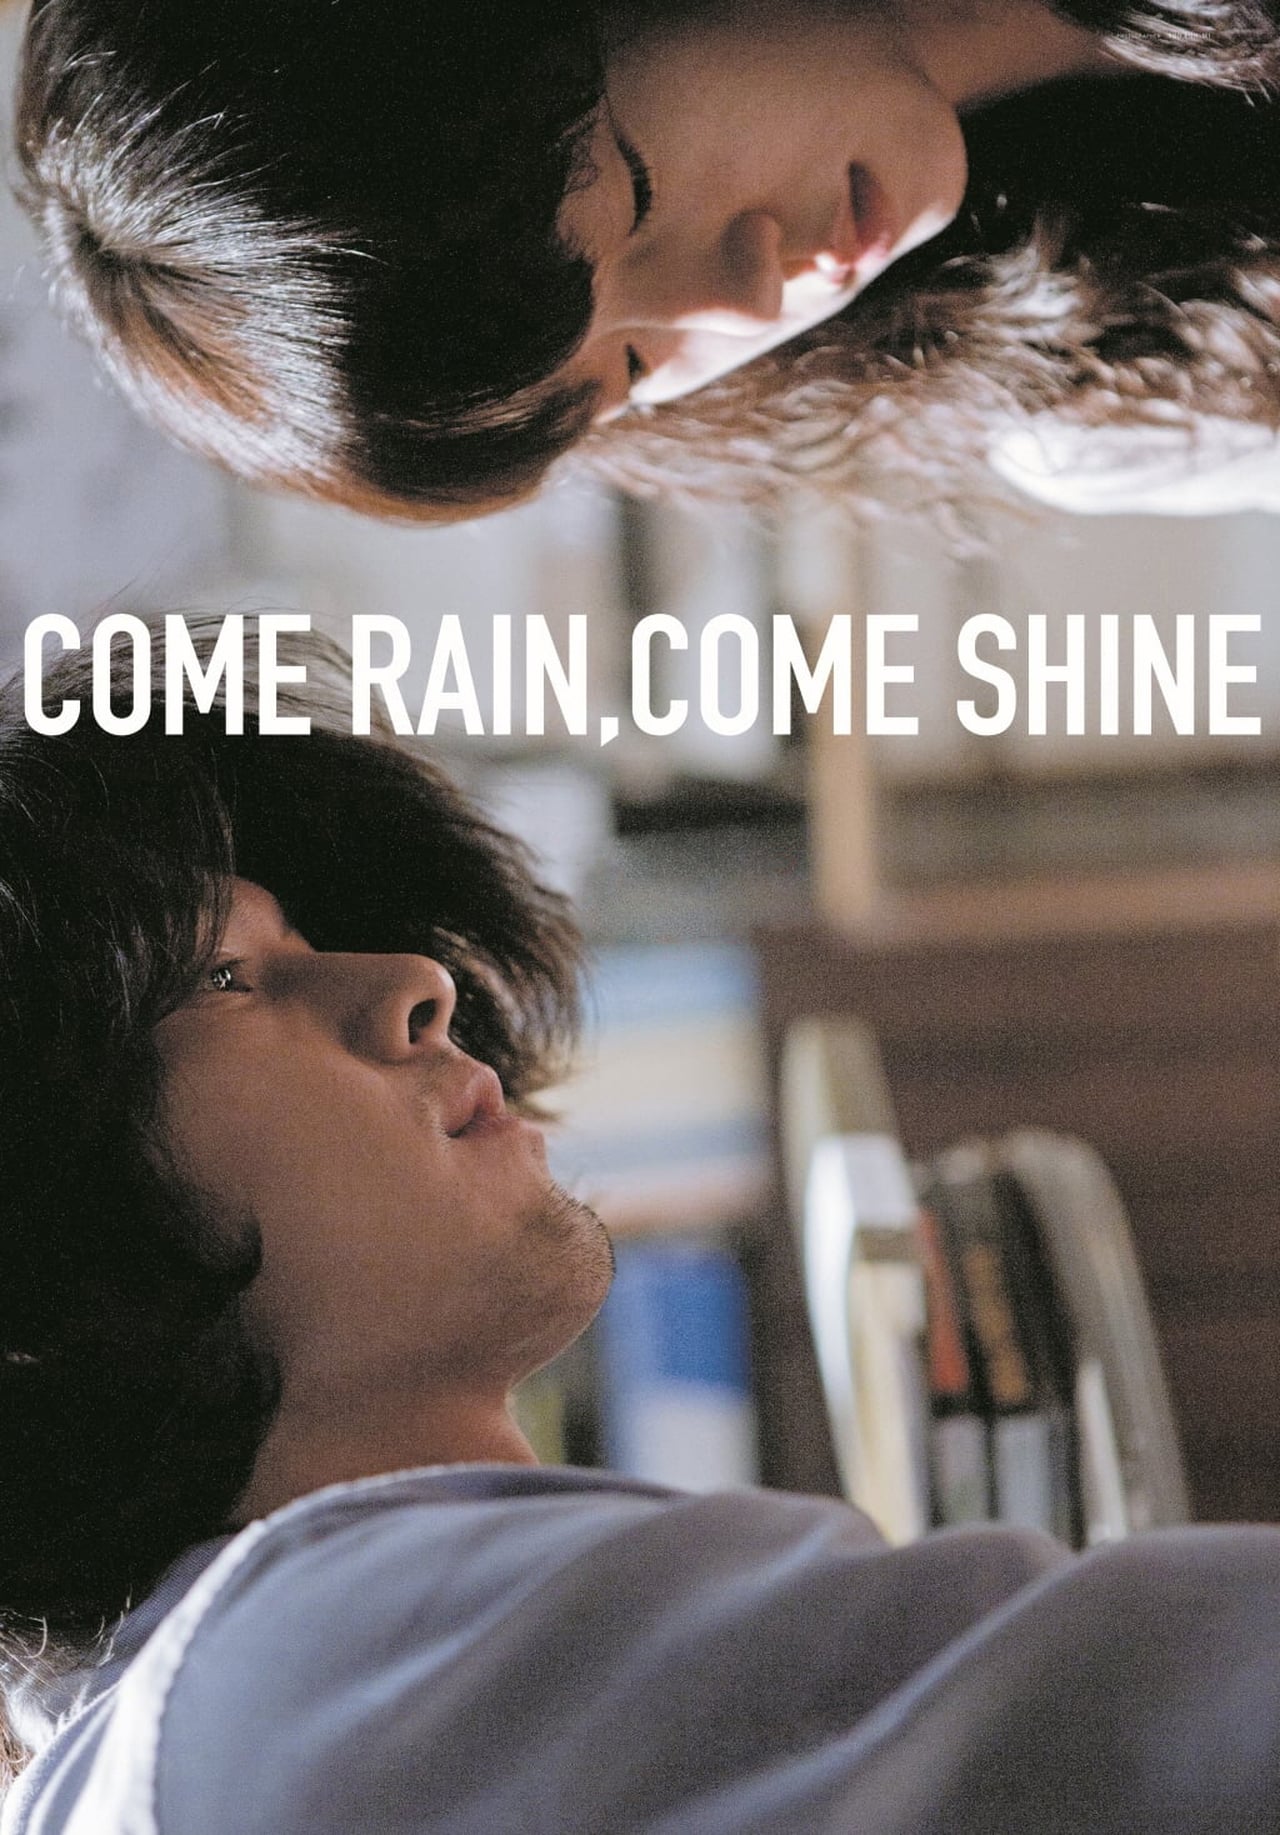 He comes the rain. Come Rain and Shine. Come Shine - come Shine 2001. Rain Full of Love Lim.